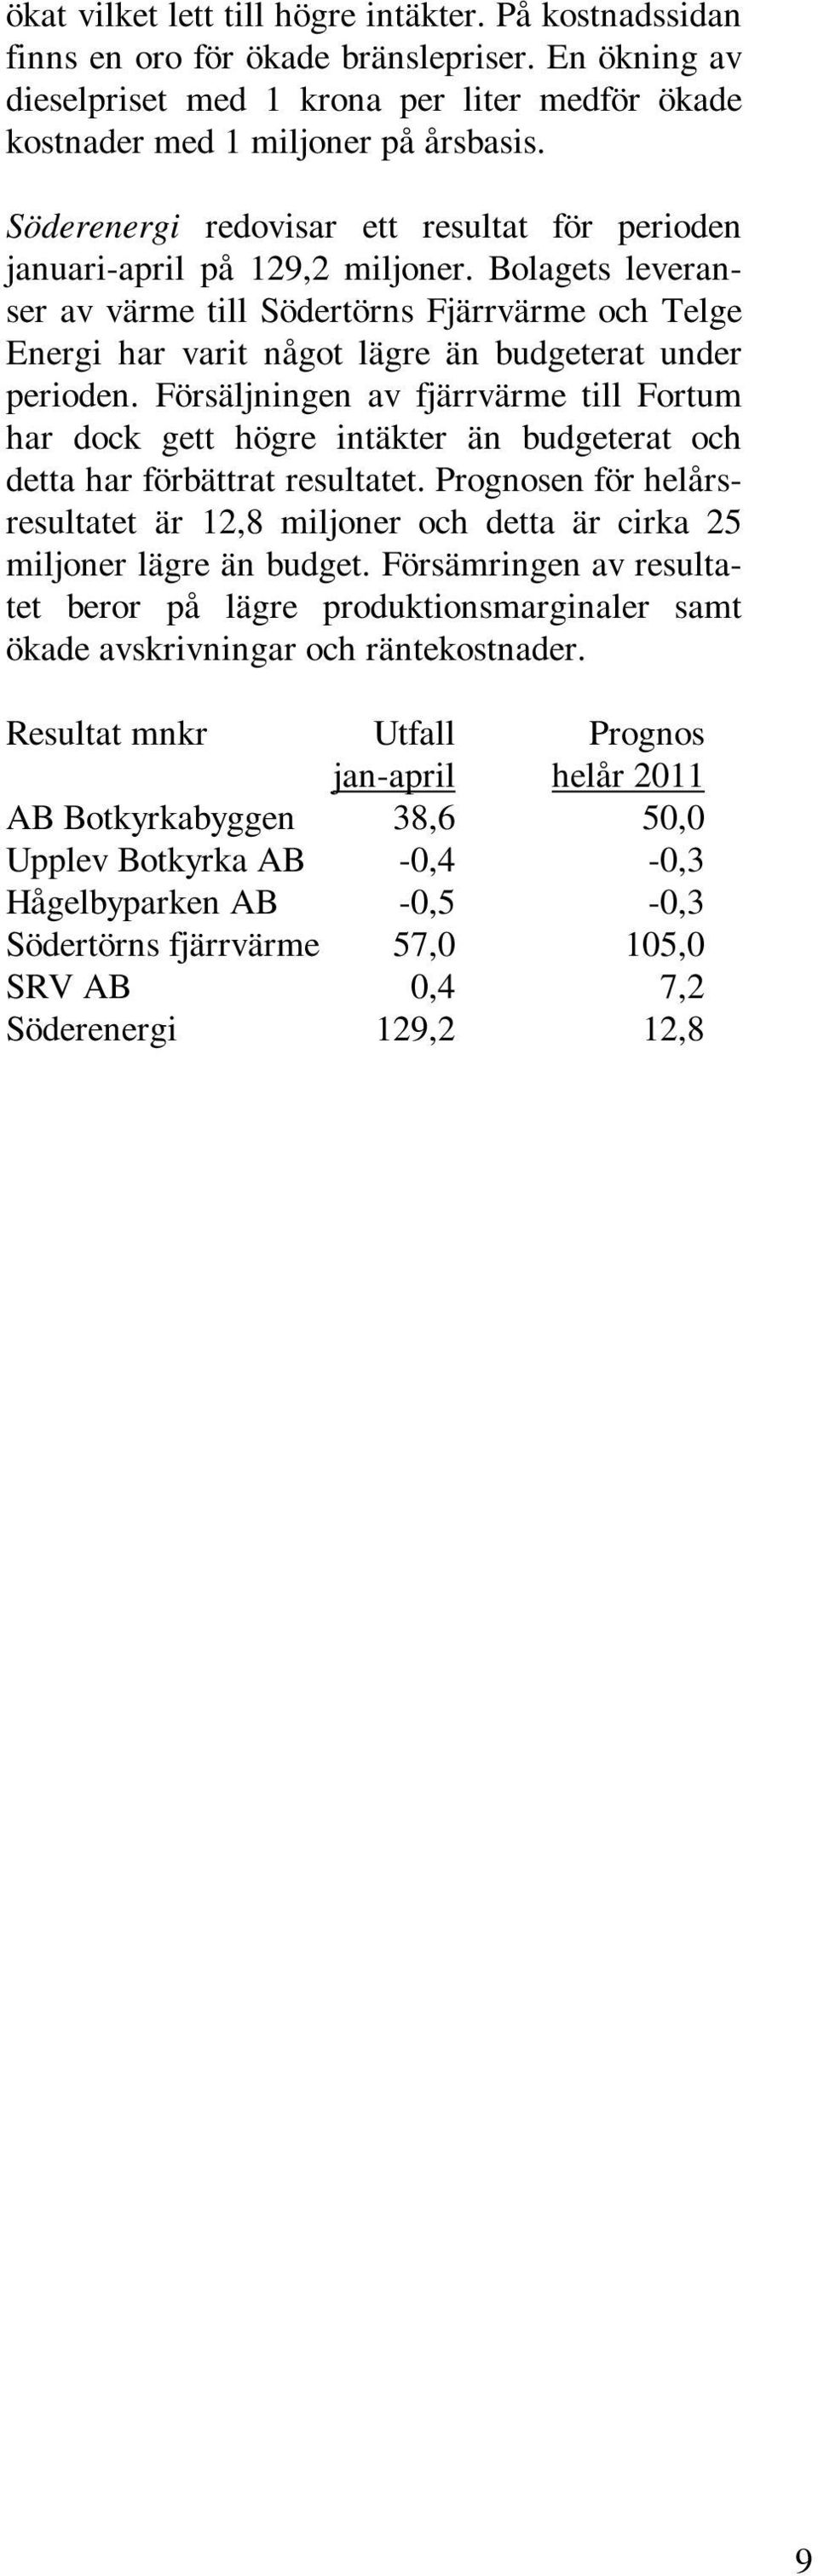 Bolagets leveranser av värme till Södertörns Fjärrvärme och Telge Energi har varit något lägre än budgeterat under perioden.